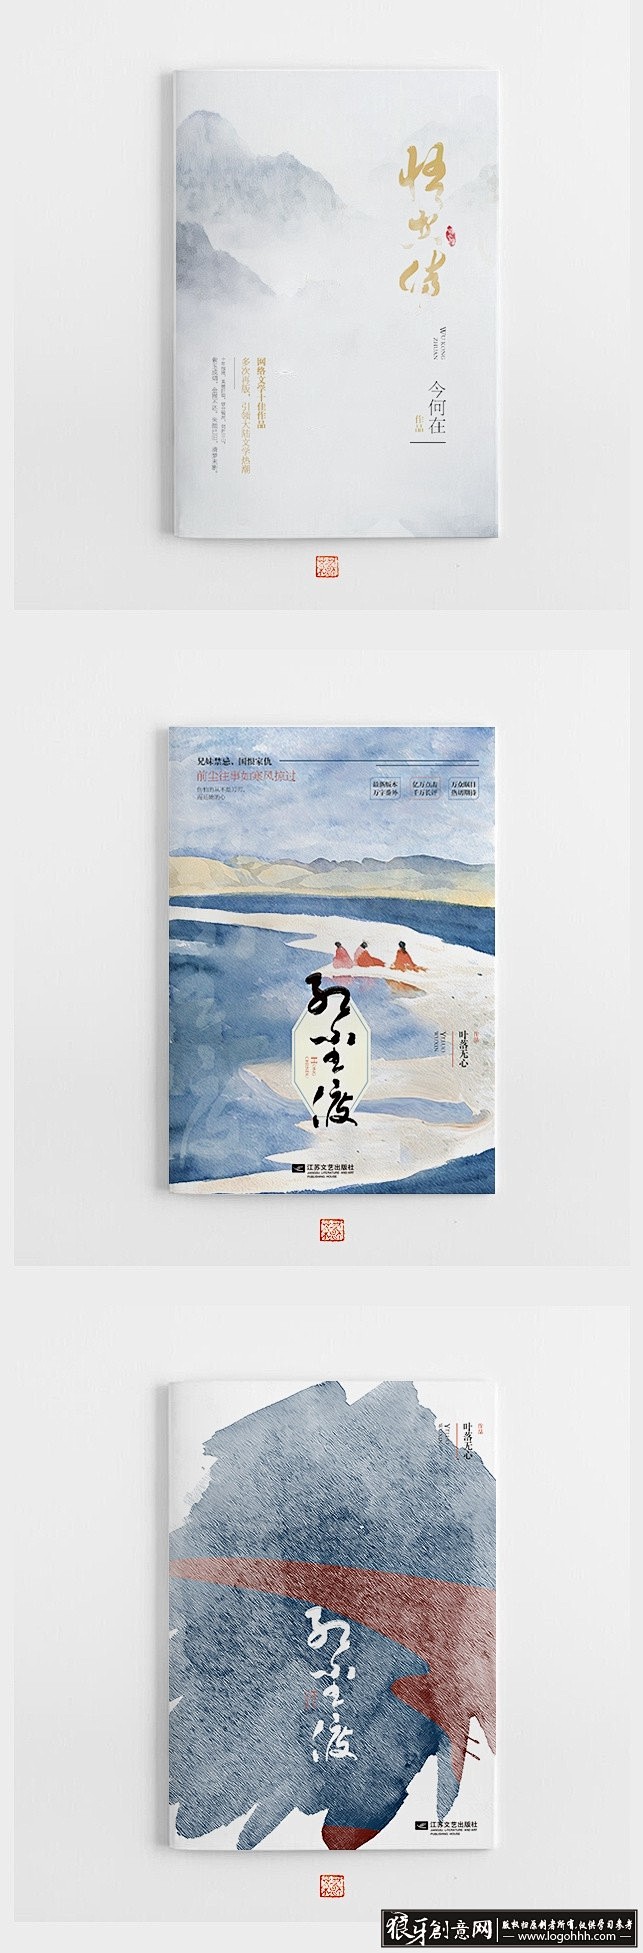 创意画册 创意书籍封面设计 中国风古典画...